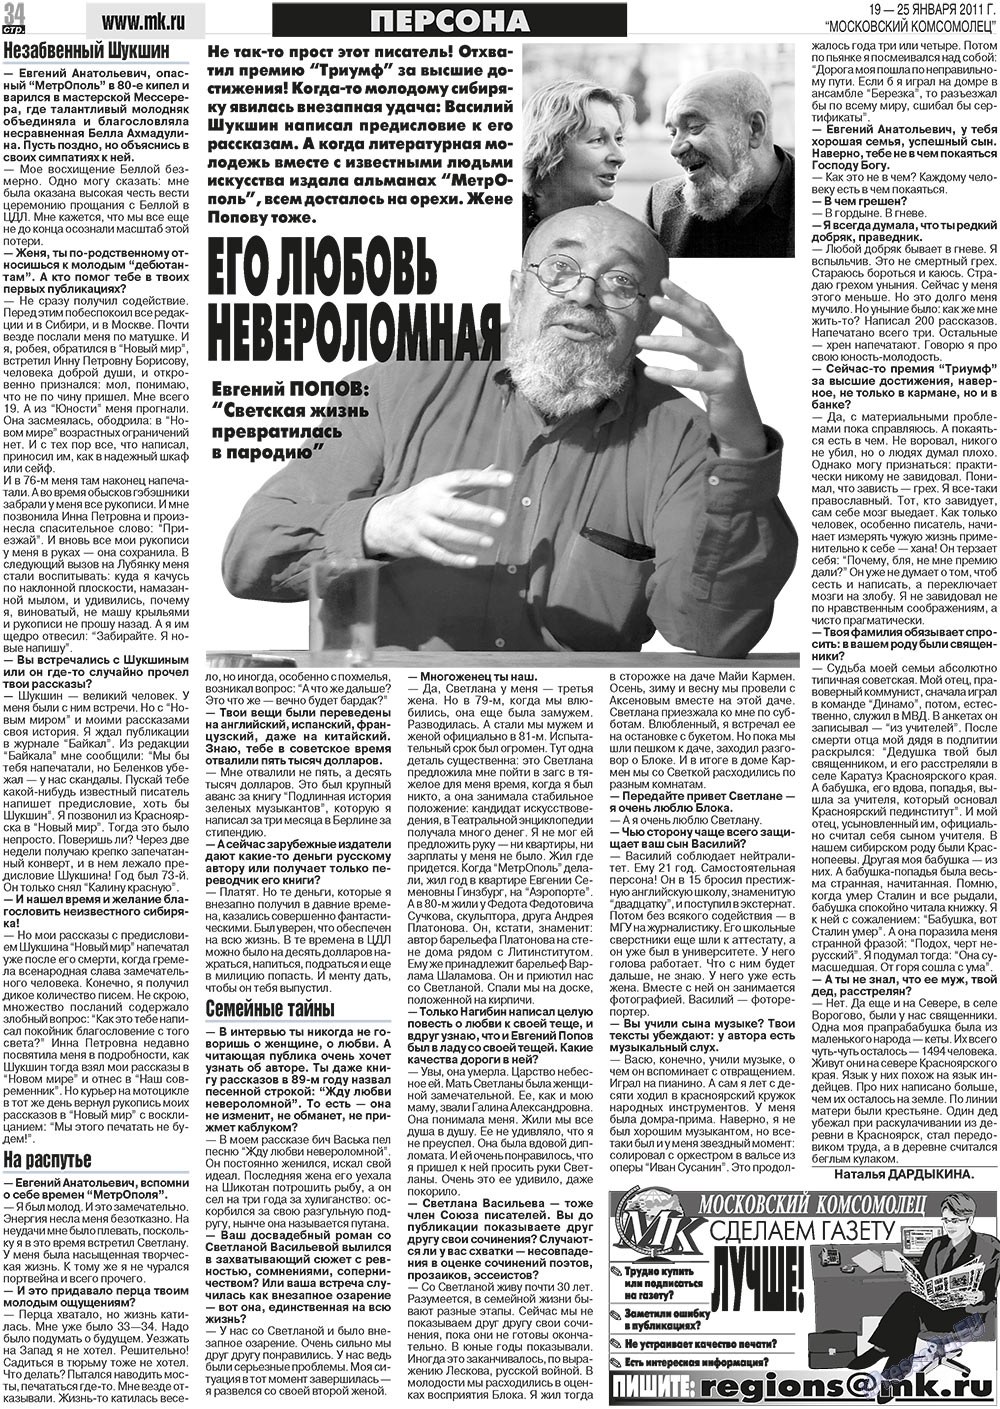 МК Испания, газета. 2011 №3 стр.34